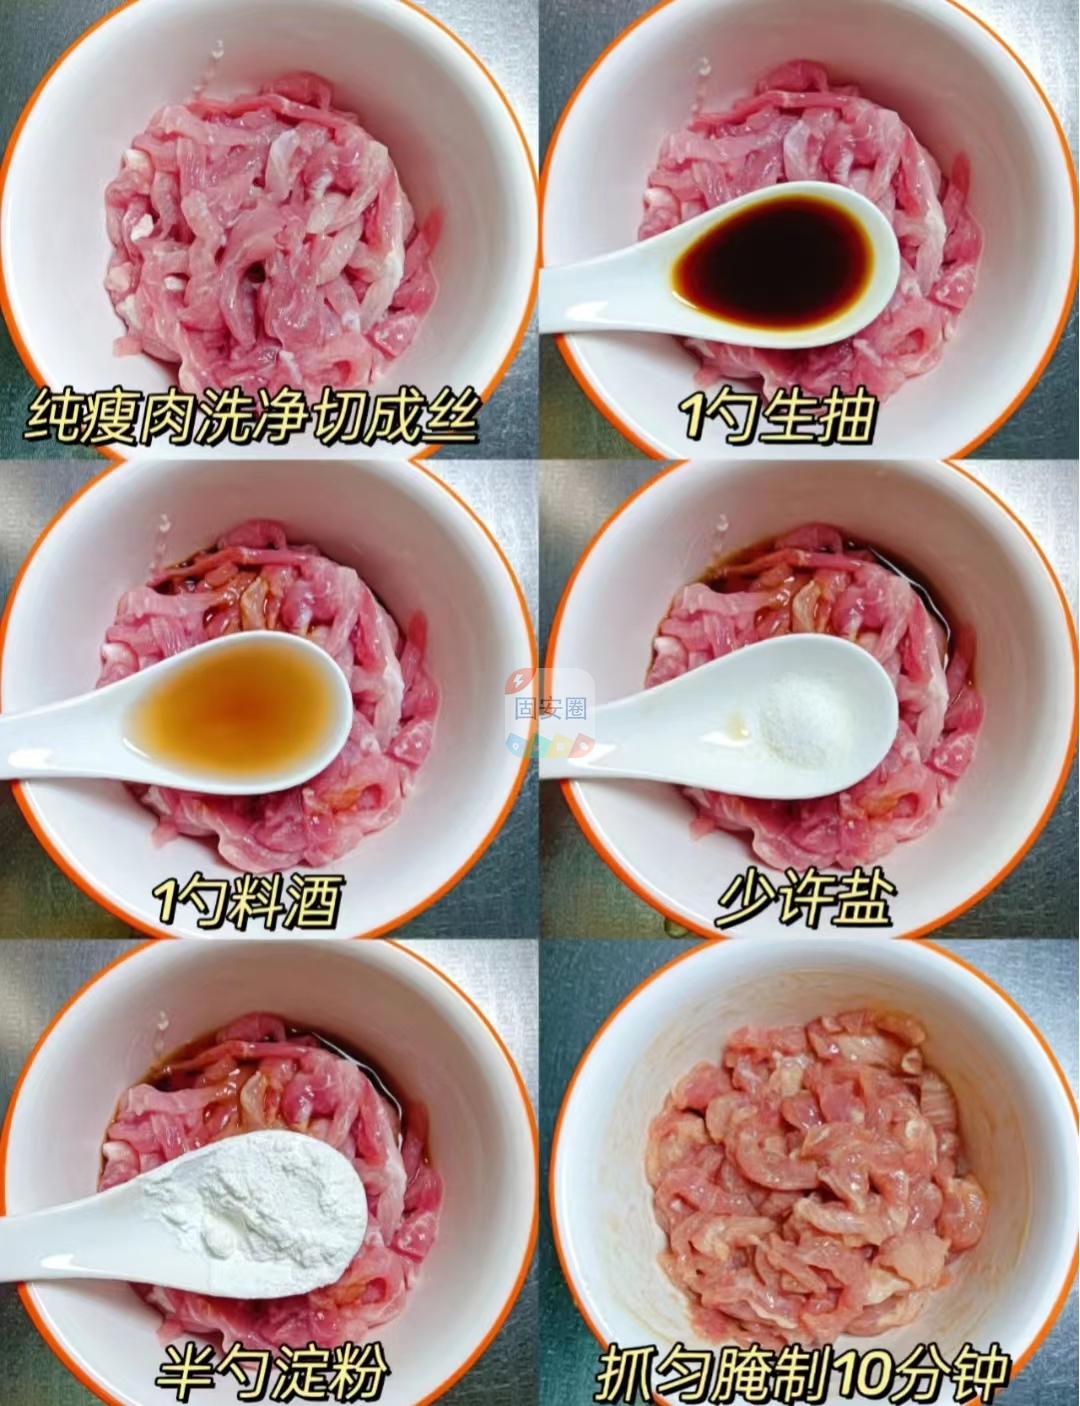 鱼香肉丝可以试试这样做，汤汁拌饭超好吃5600 作者:中国大厨 帖子ID:201291 鱼香肉丝,肉丝,可以,试试,这样